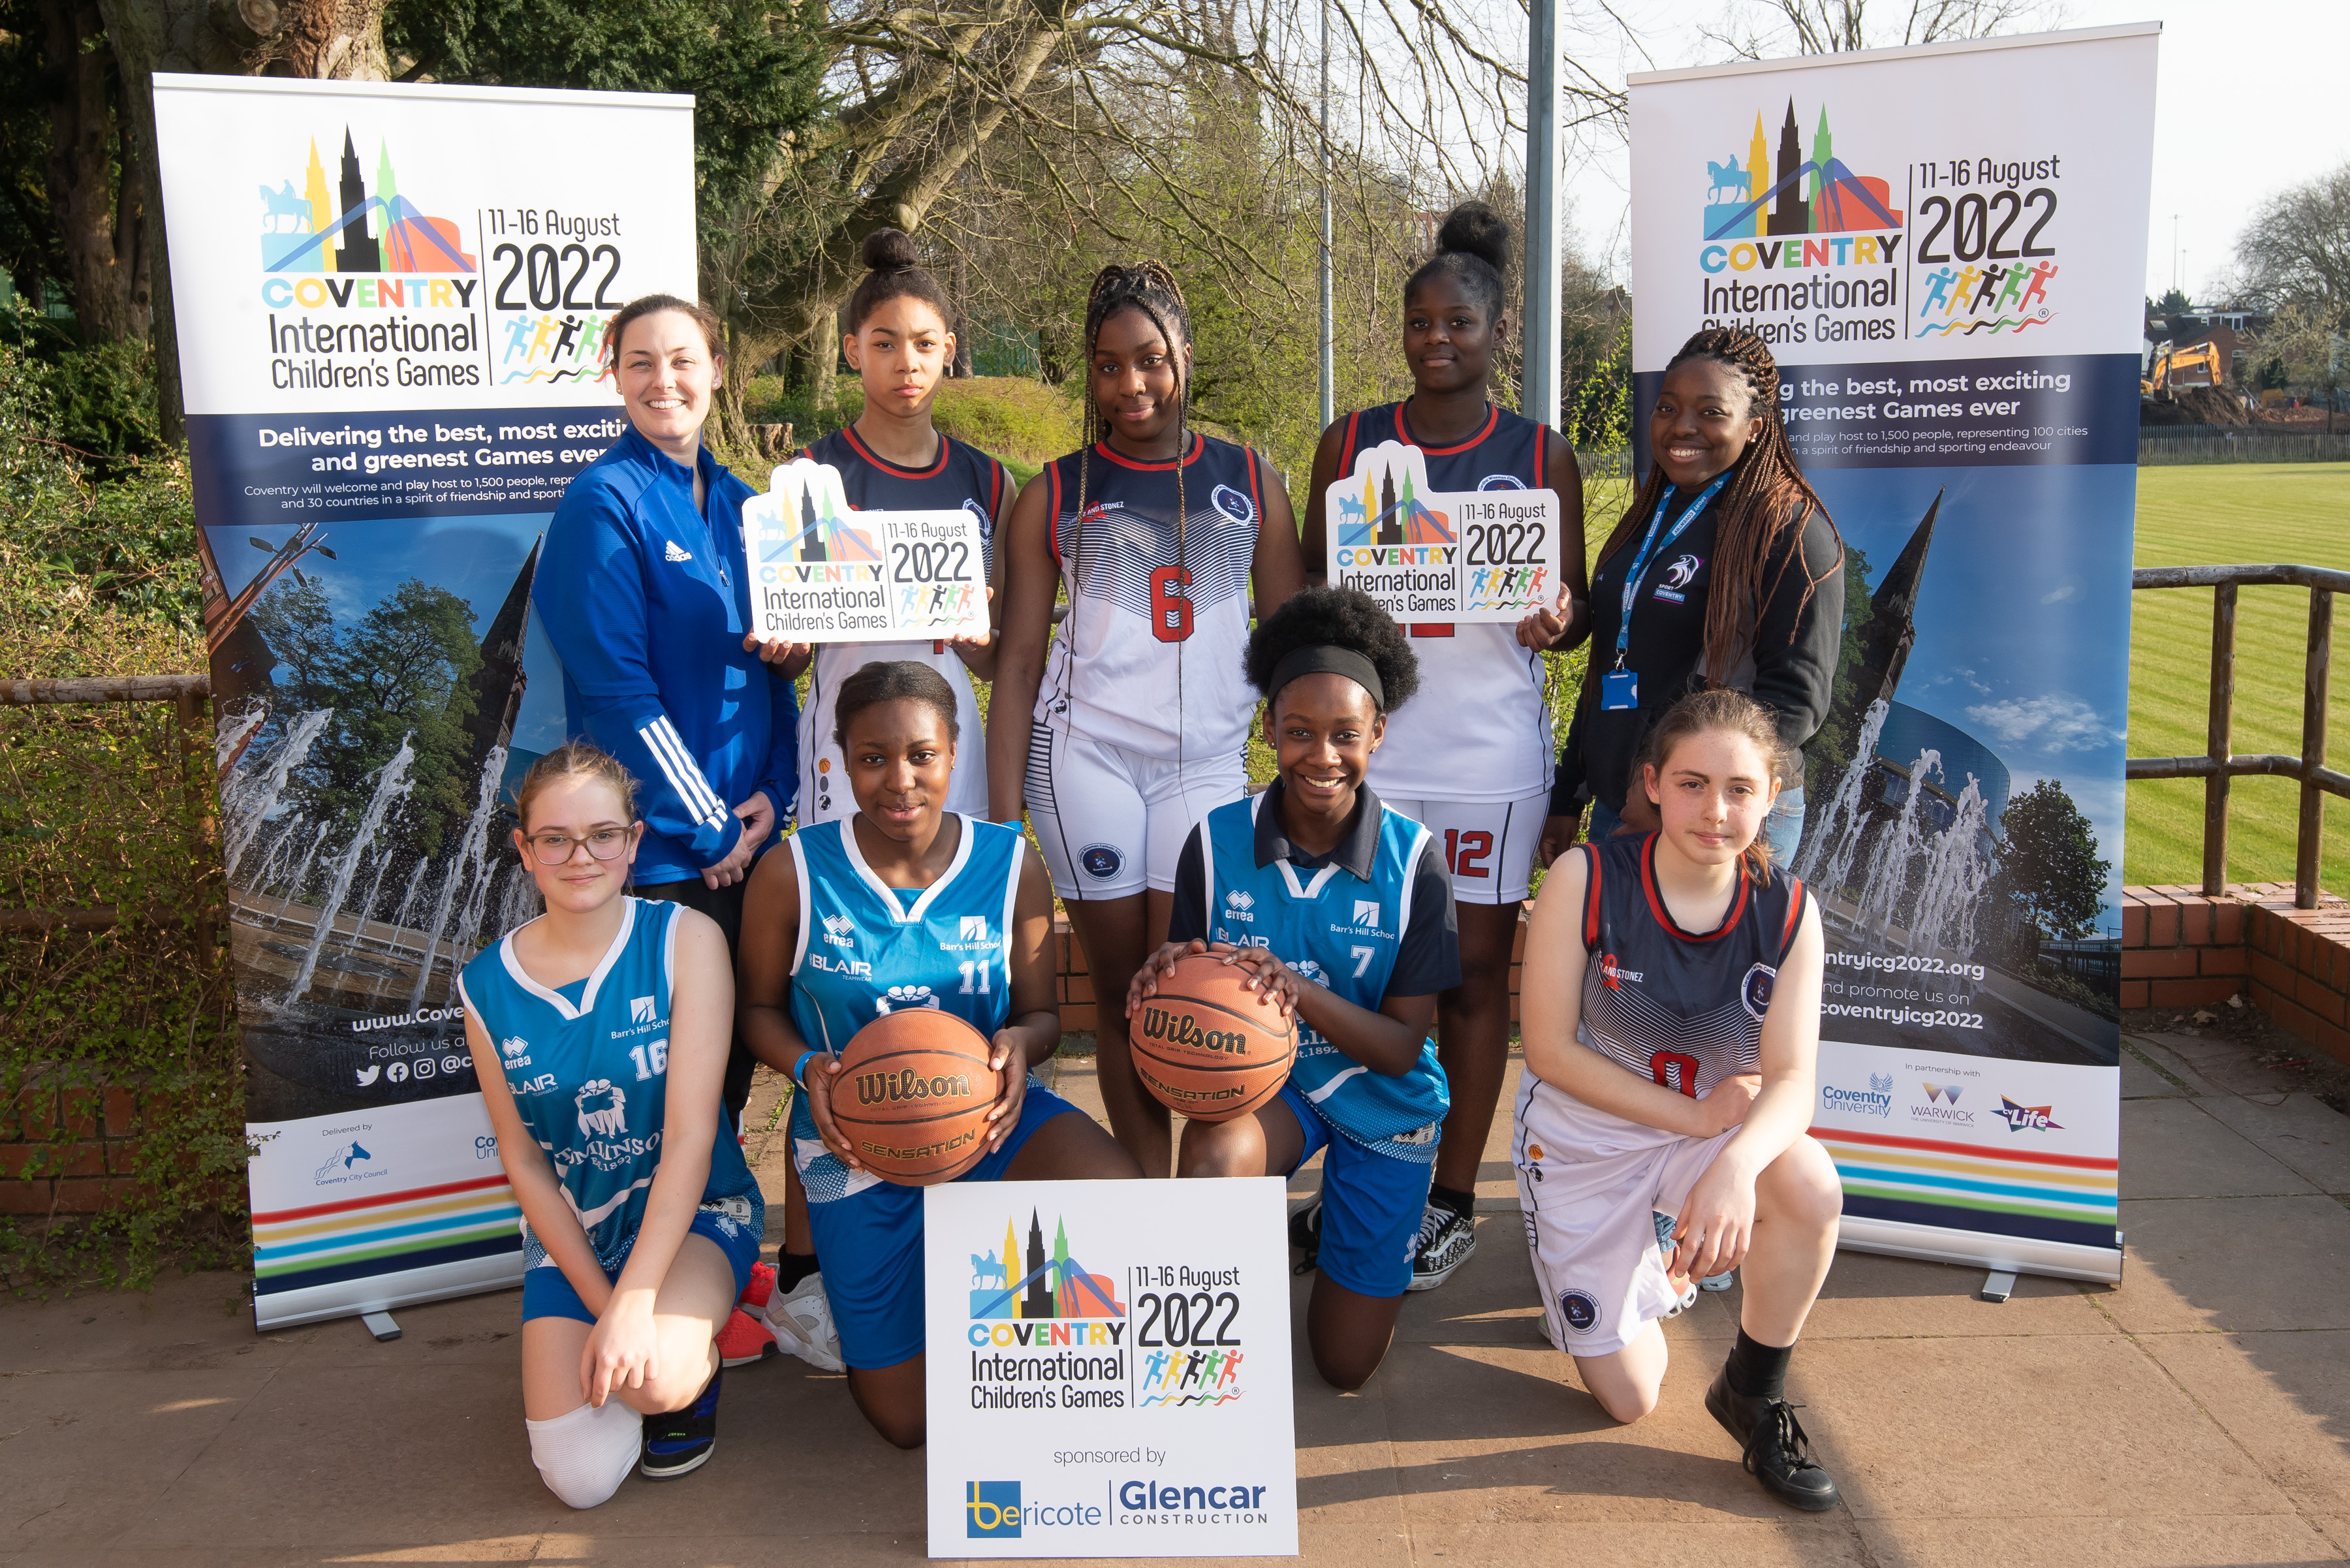 Girls' basketball hopefuls for International Children’s Games 2022